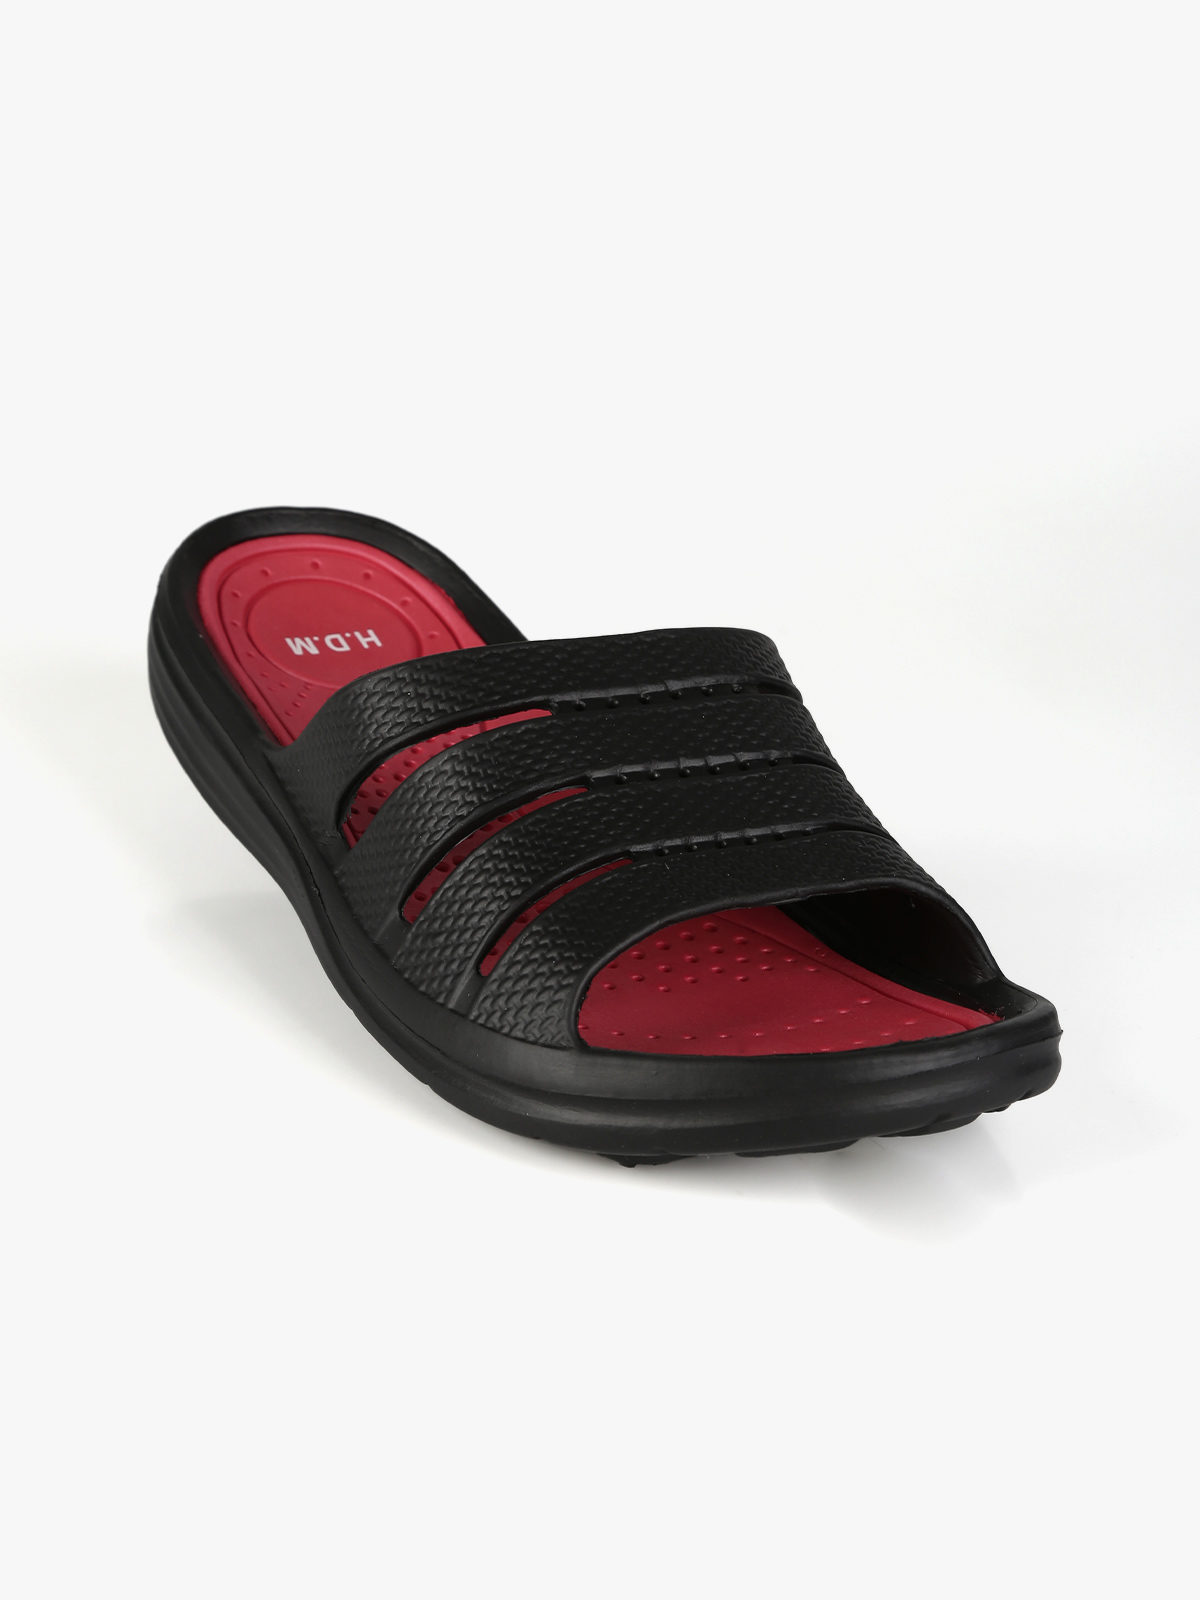 Cheap Summer Sandals Men Leather Classic Roman Sandals Slipper Outdoor  Sneaker Beach Rubber Flip Flops Men Water Trekking Sandals | Joom